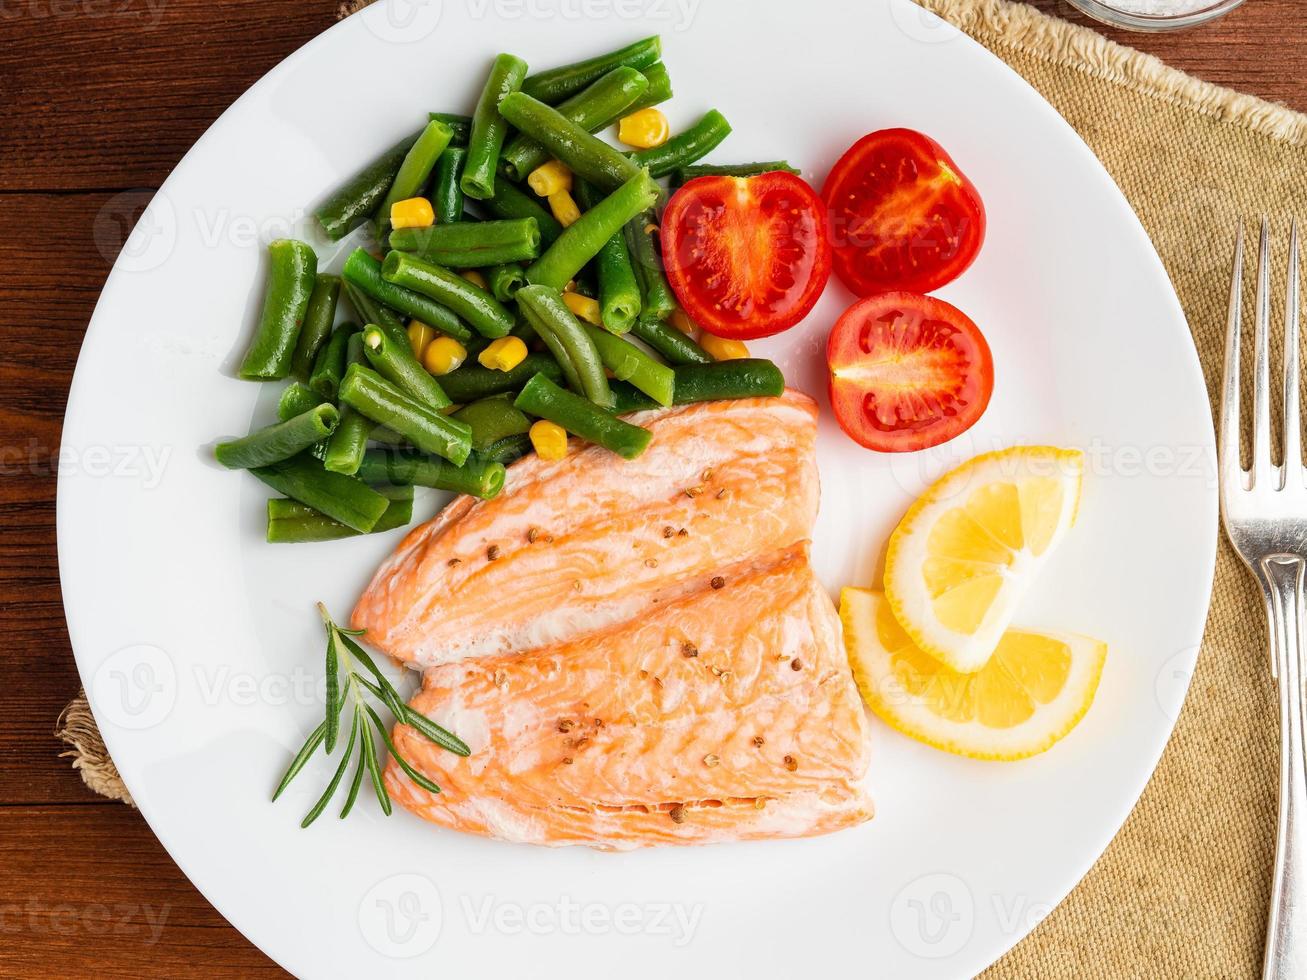 pescado salmón al vapor con verduras. comida de dieta saludable, telón de fondo de madera oscura foto